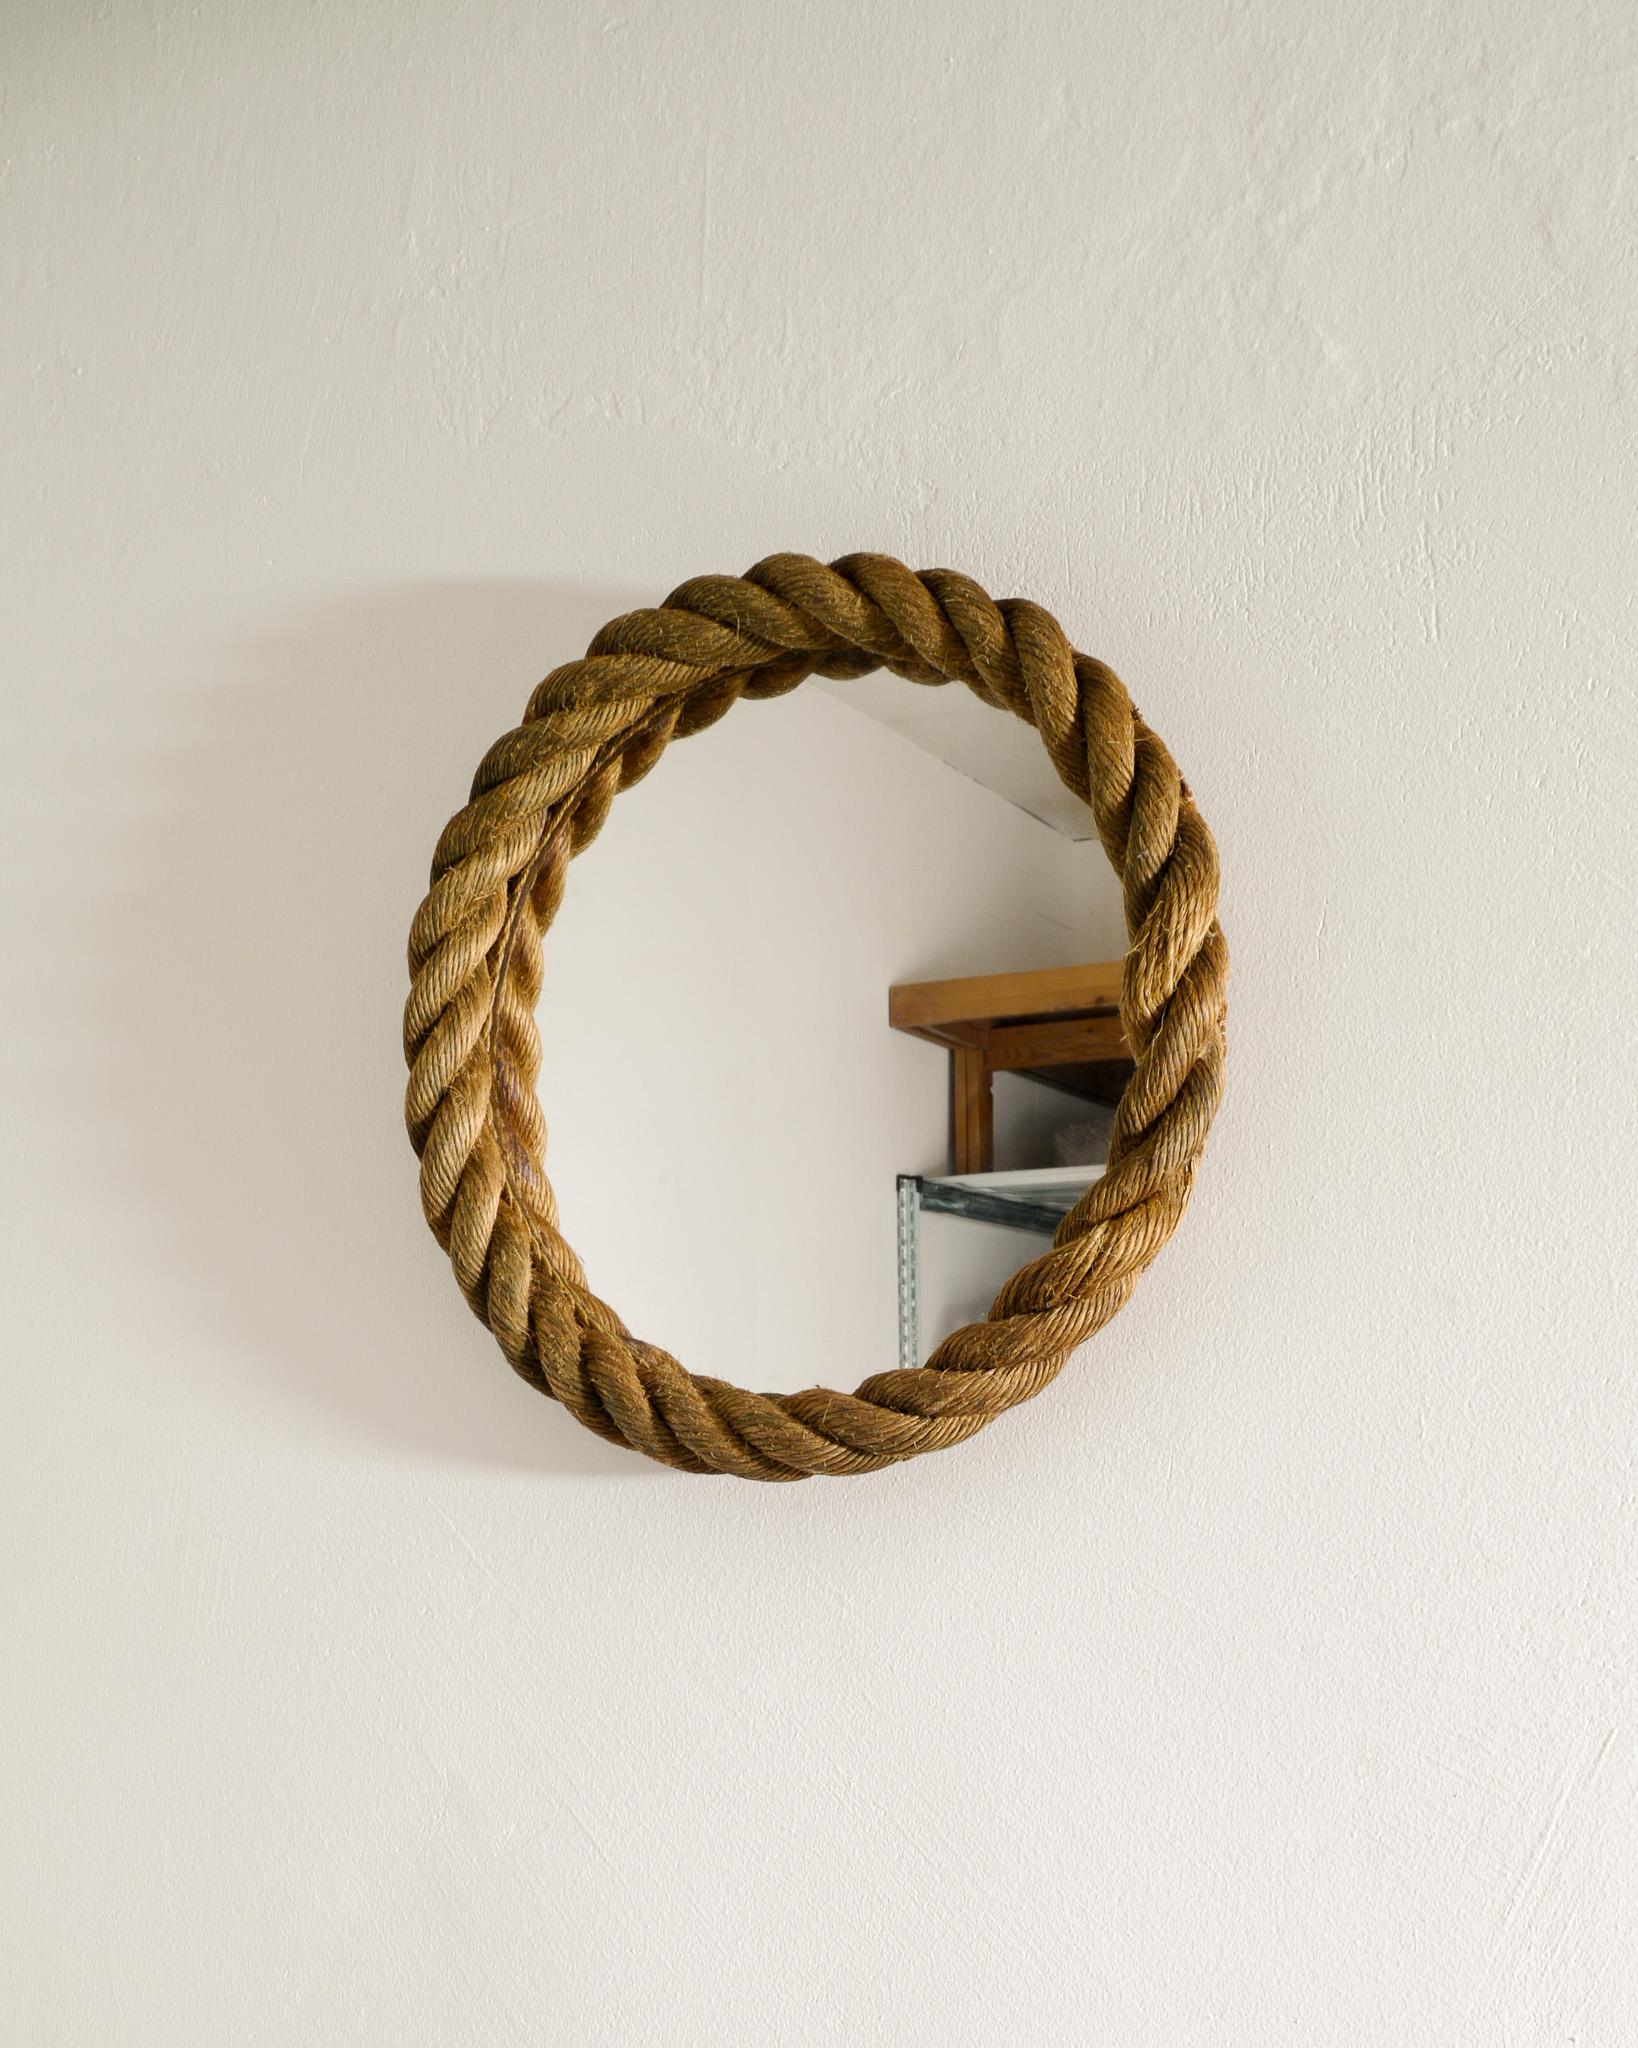 Seltener und ikonischer runder Seilspiegel von Adrien Audoux & Frida Minet, hergestellt in Frankreich in den 1960er Jahren. In gutem Zustand mit schöner Patina von Alter und Gebrauch. 

Abmessungen: Durchmesser: 45 cm / 17.7